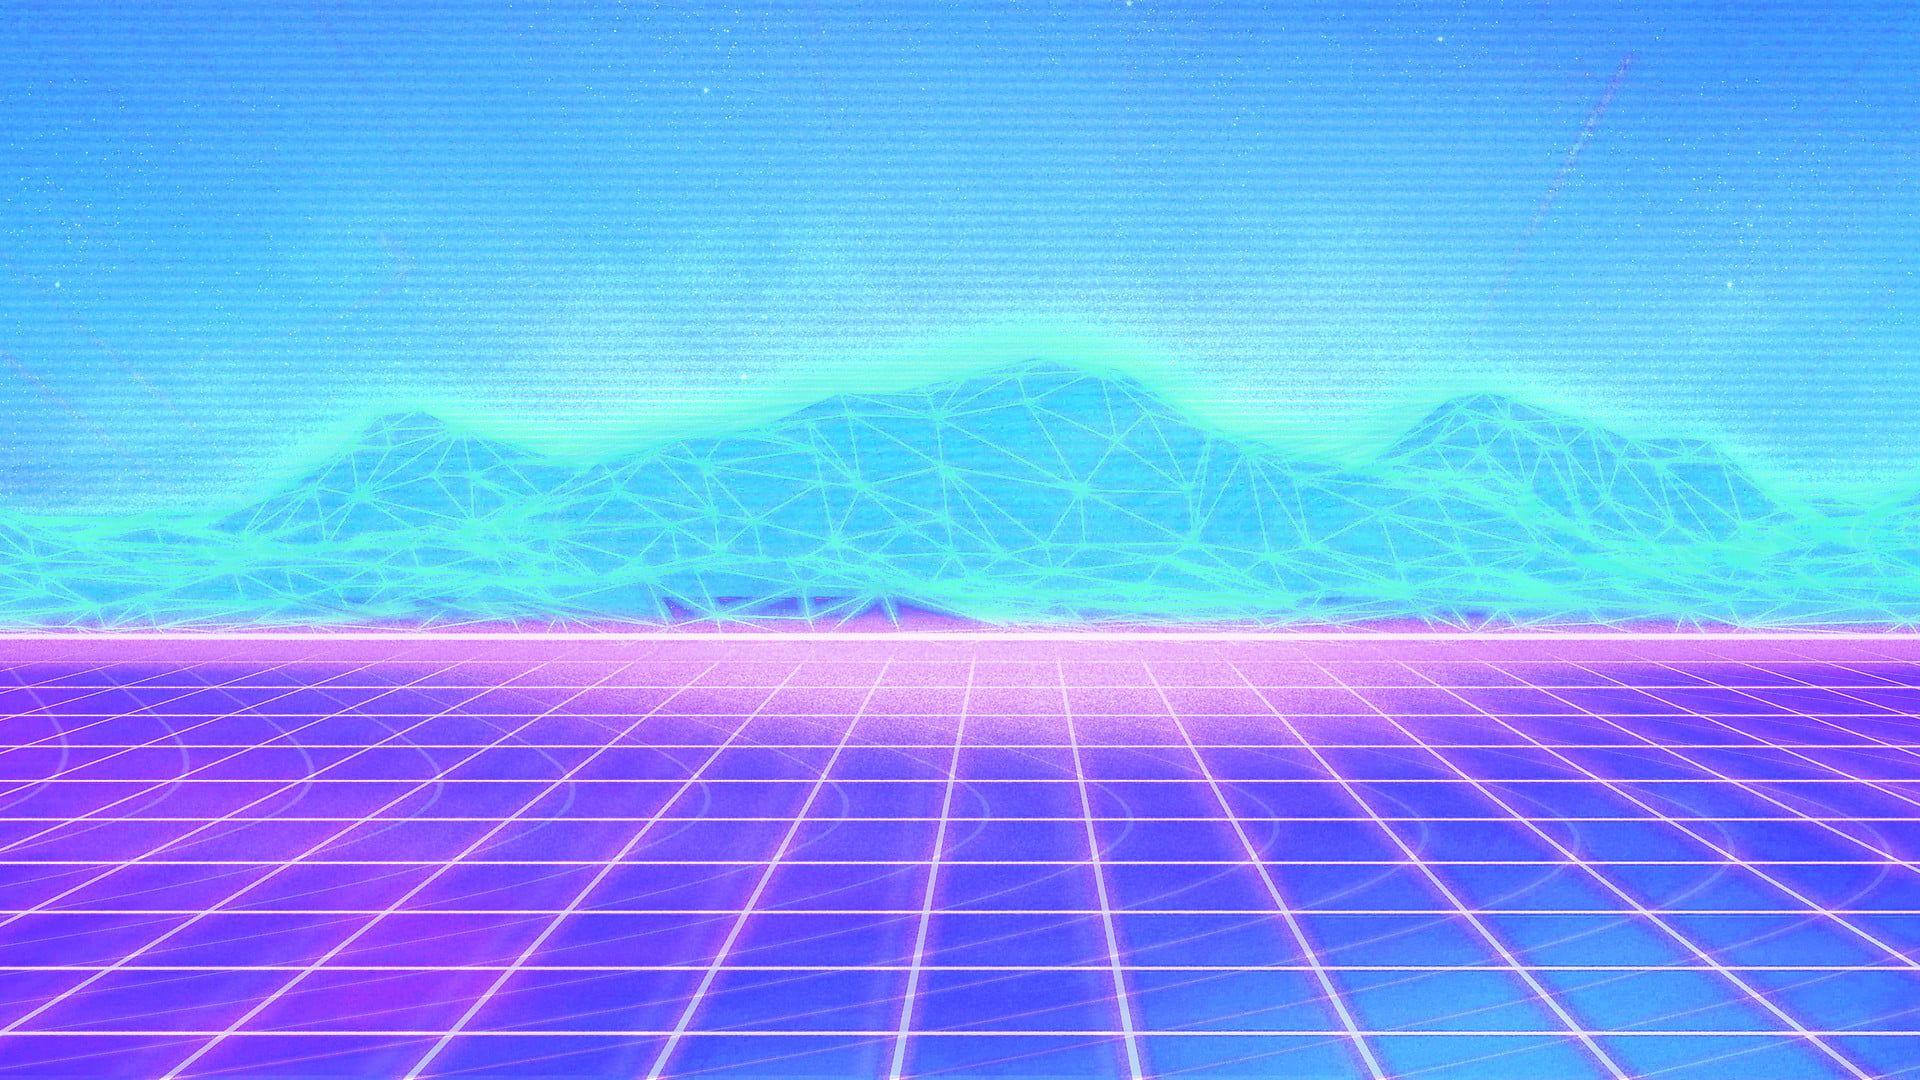 pastel vaporwave background